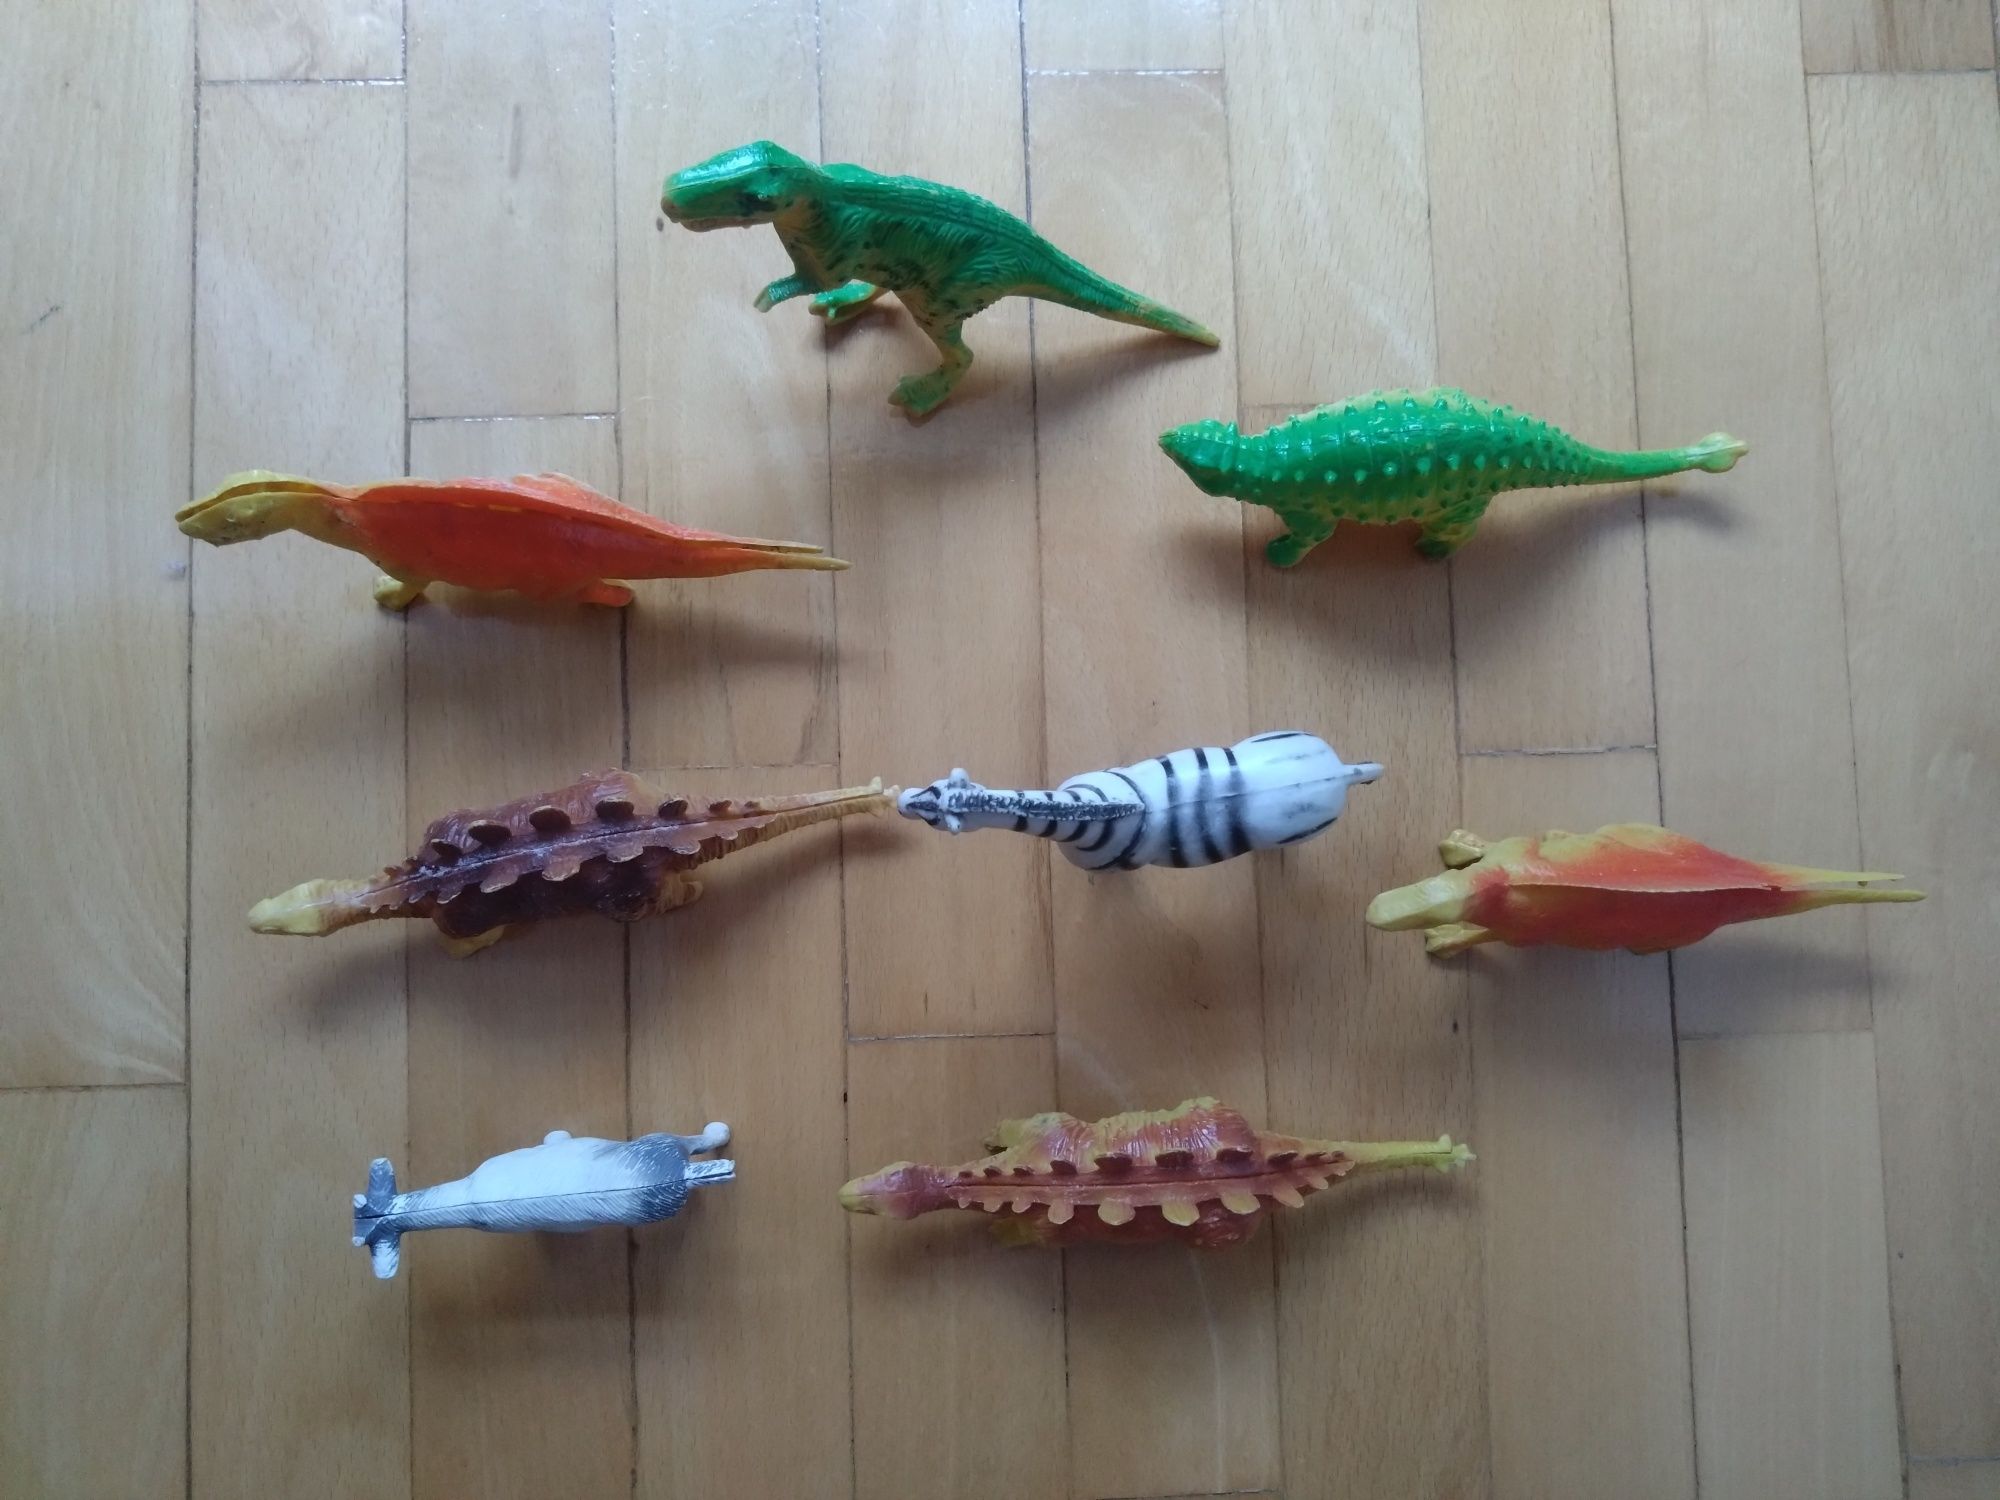 Zabawki zwierzęta. Dinozaury 6 szt. + Zebra + koza